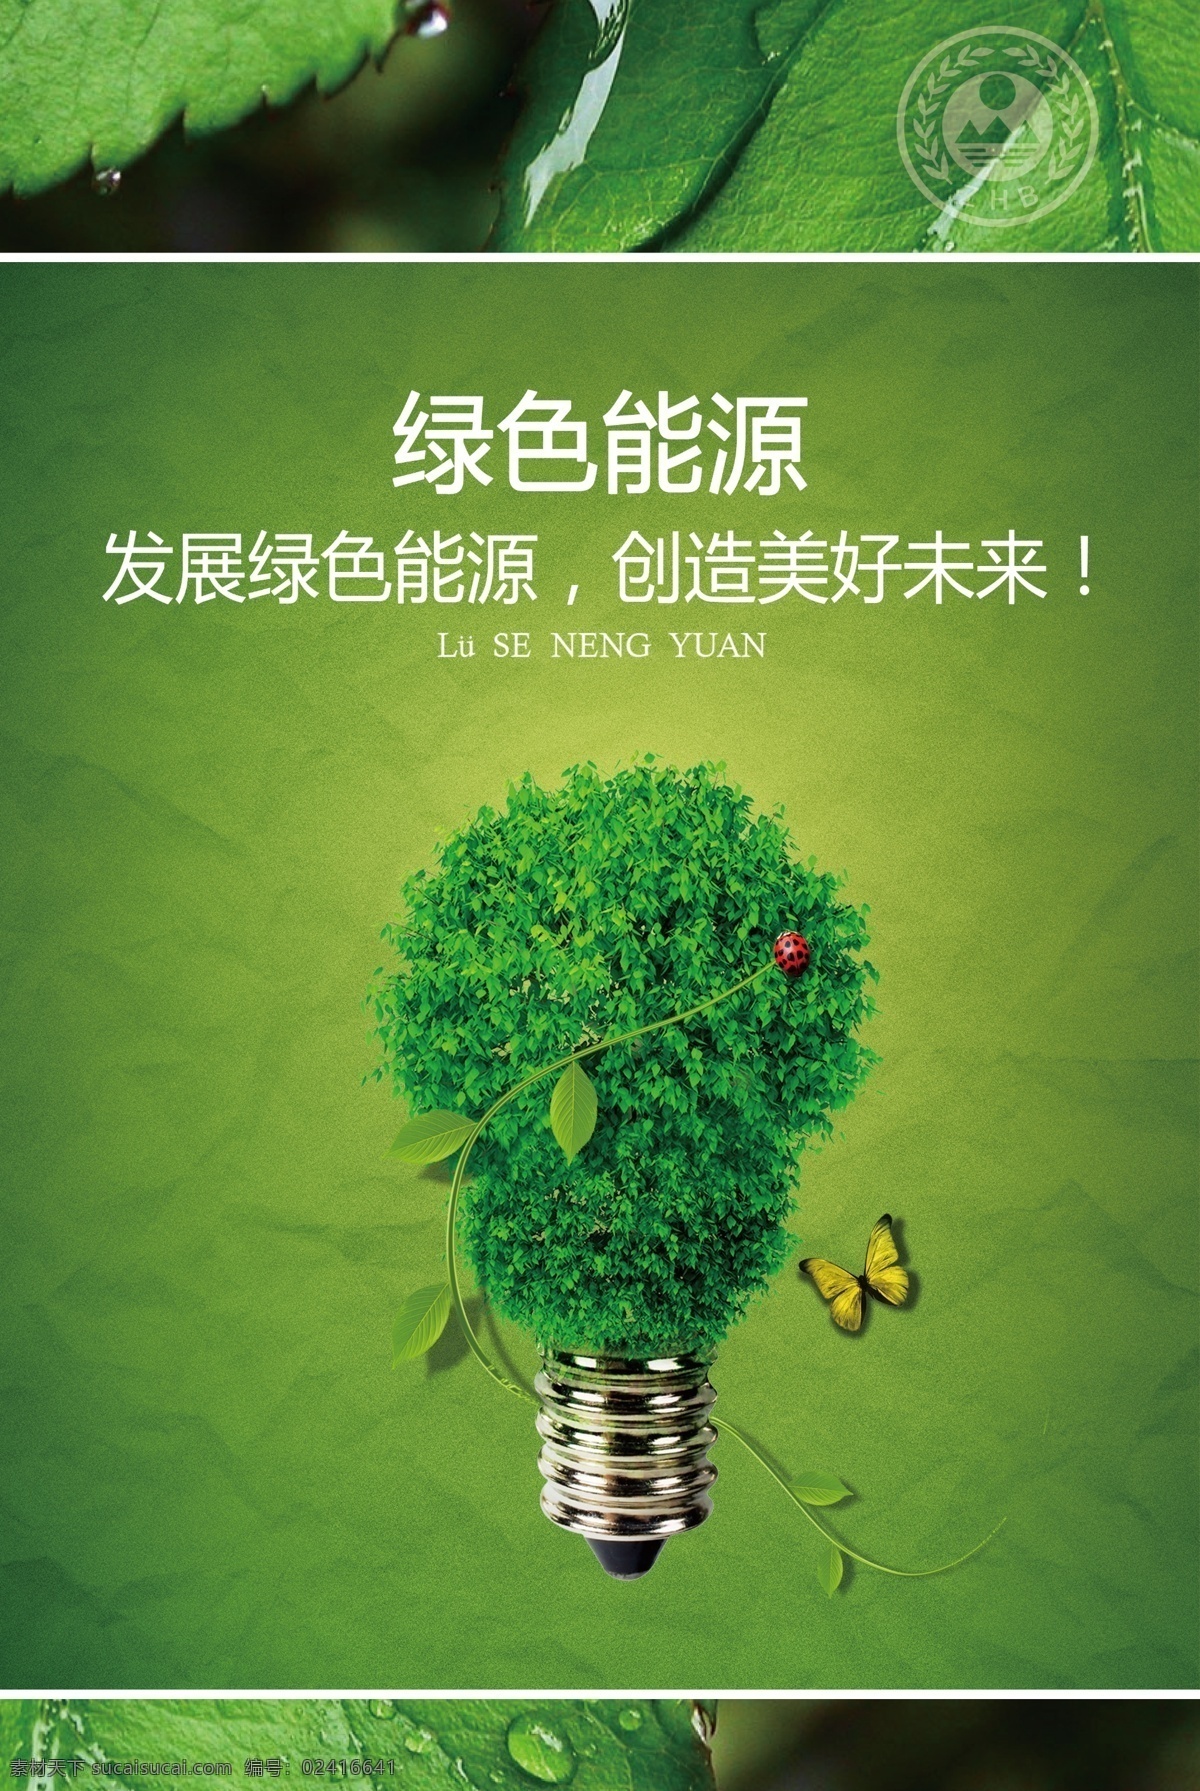 广告设计模板 环保 节能 绿色 绿色出行 绿色家园 生态 生态文明 宣传 系列 海报 模板下载 树叶 水珠 水滴 源文件 psd源文件